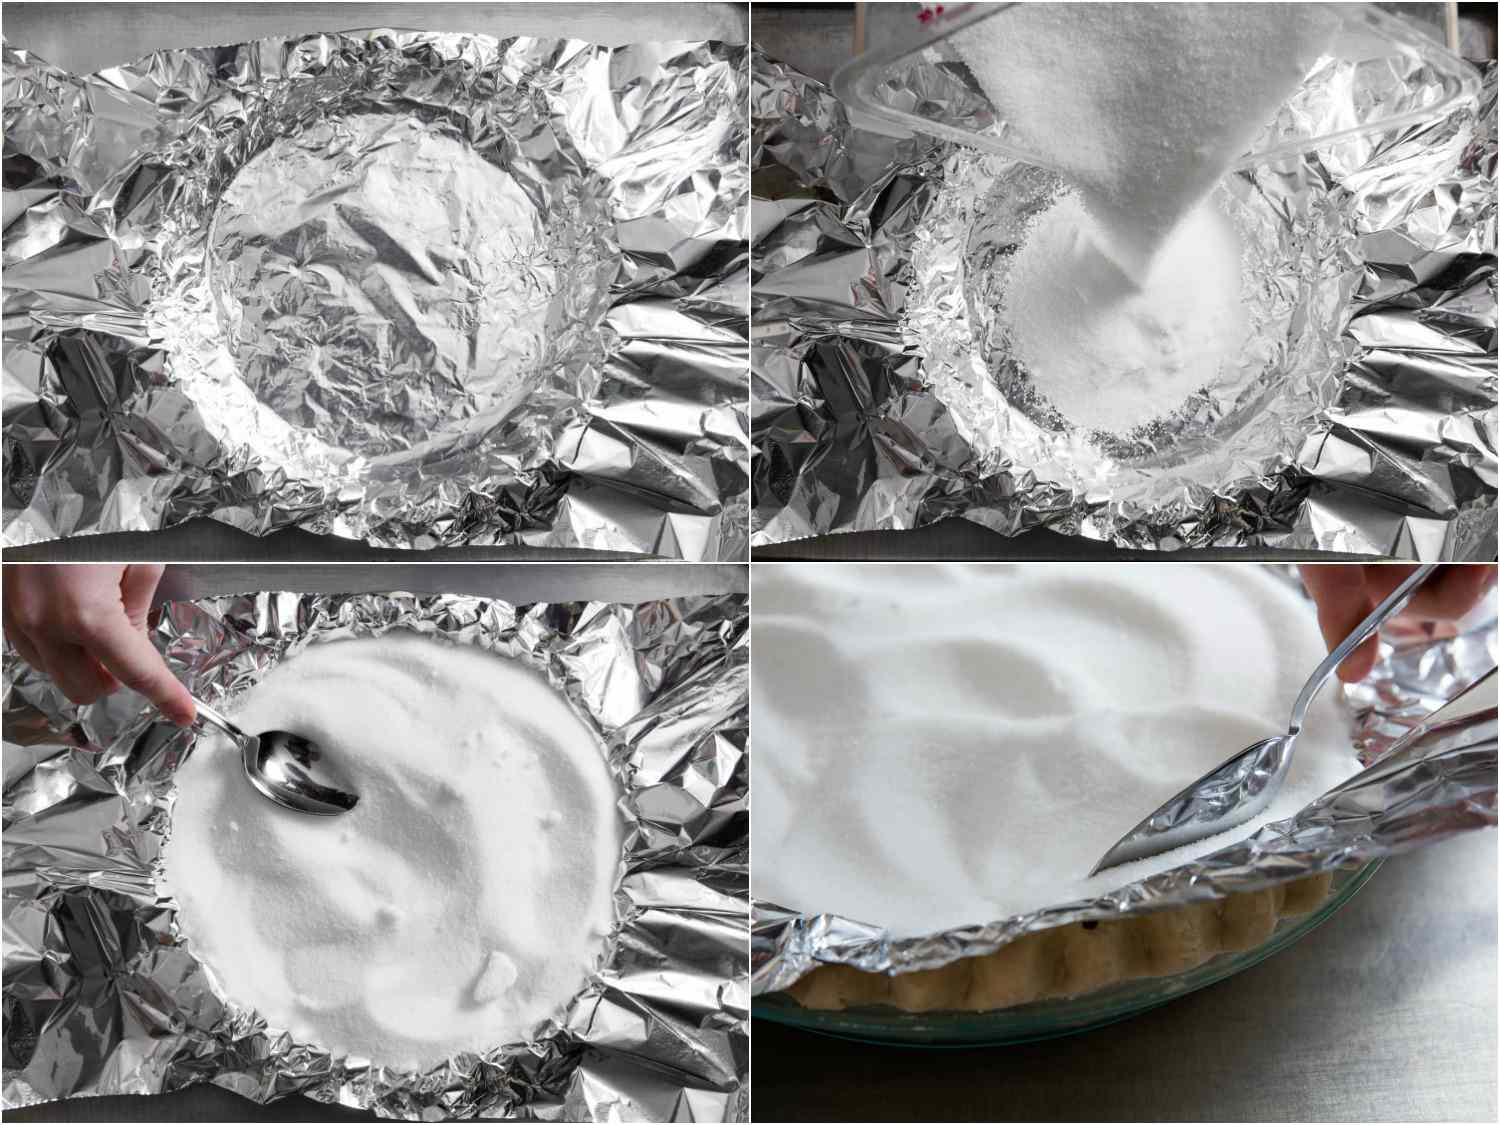 四张图展示了用糖填充馅饼的过程。